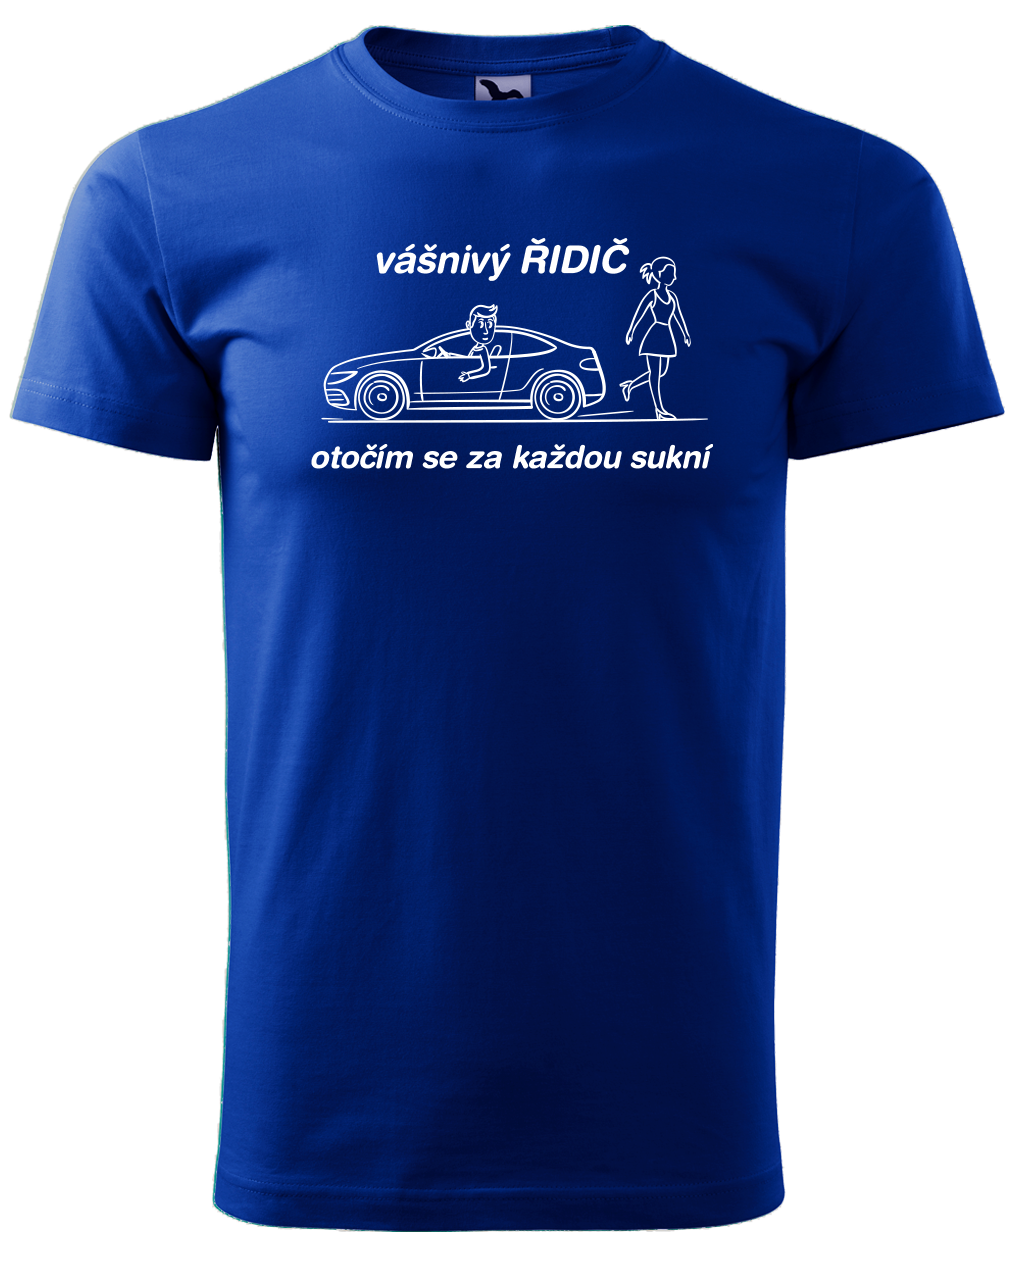 Vtipné tričko pro řidiče - Vášnivý řidič Velikost: S, Barva: Královská modrá (05)